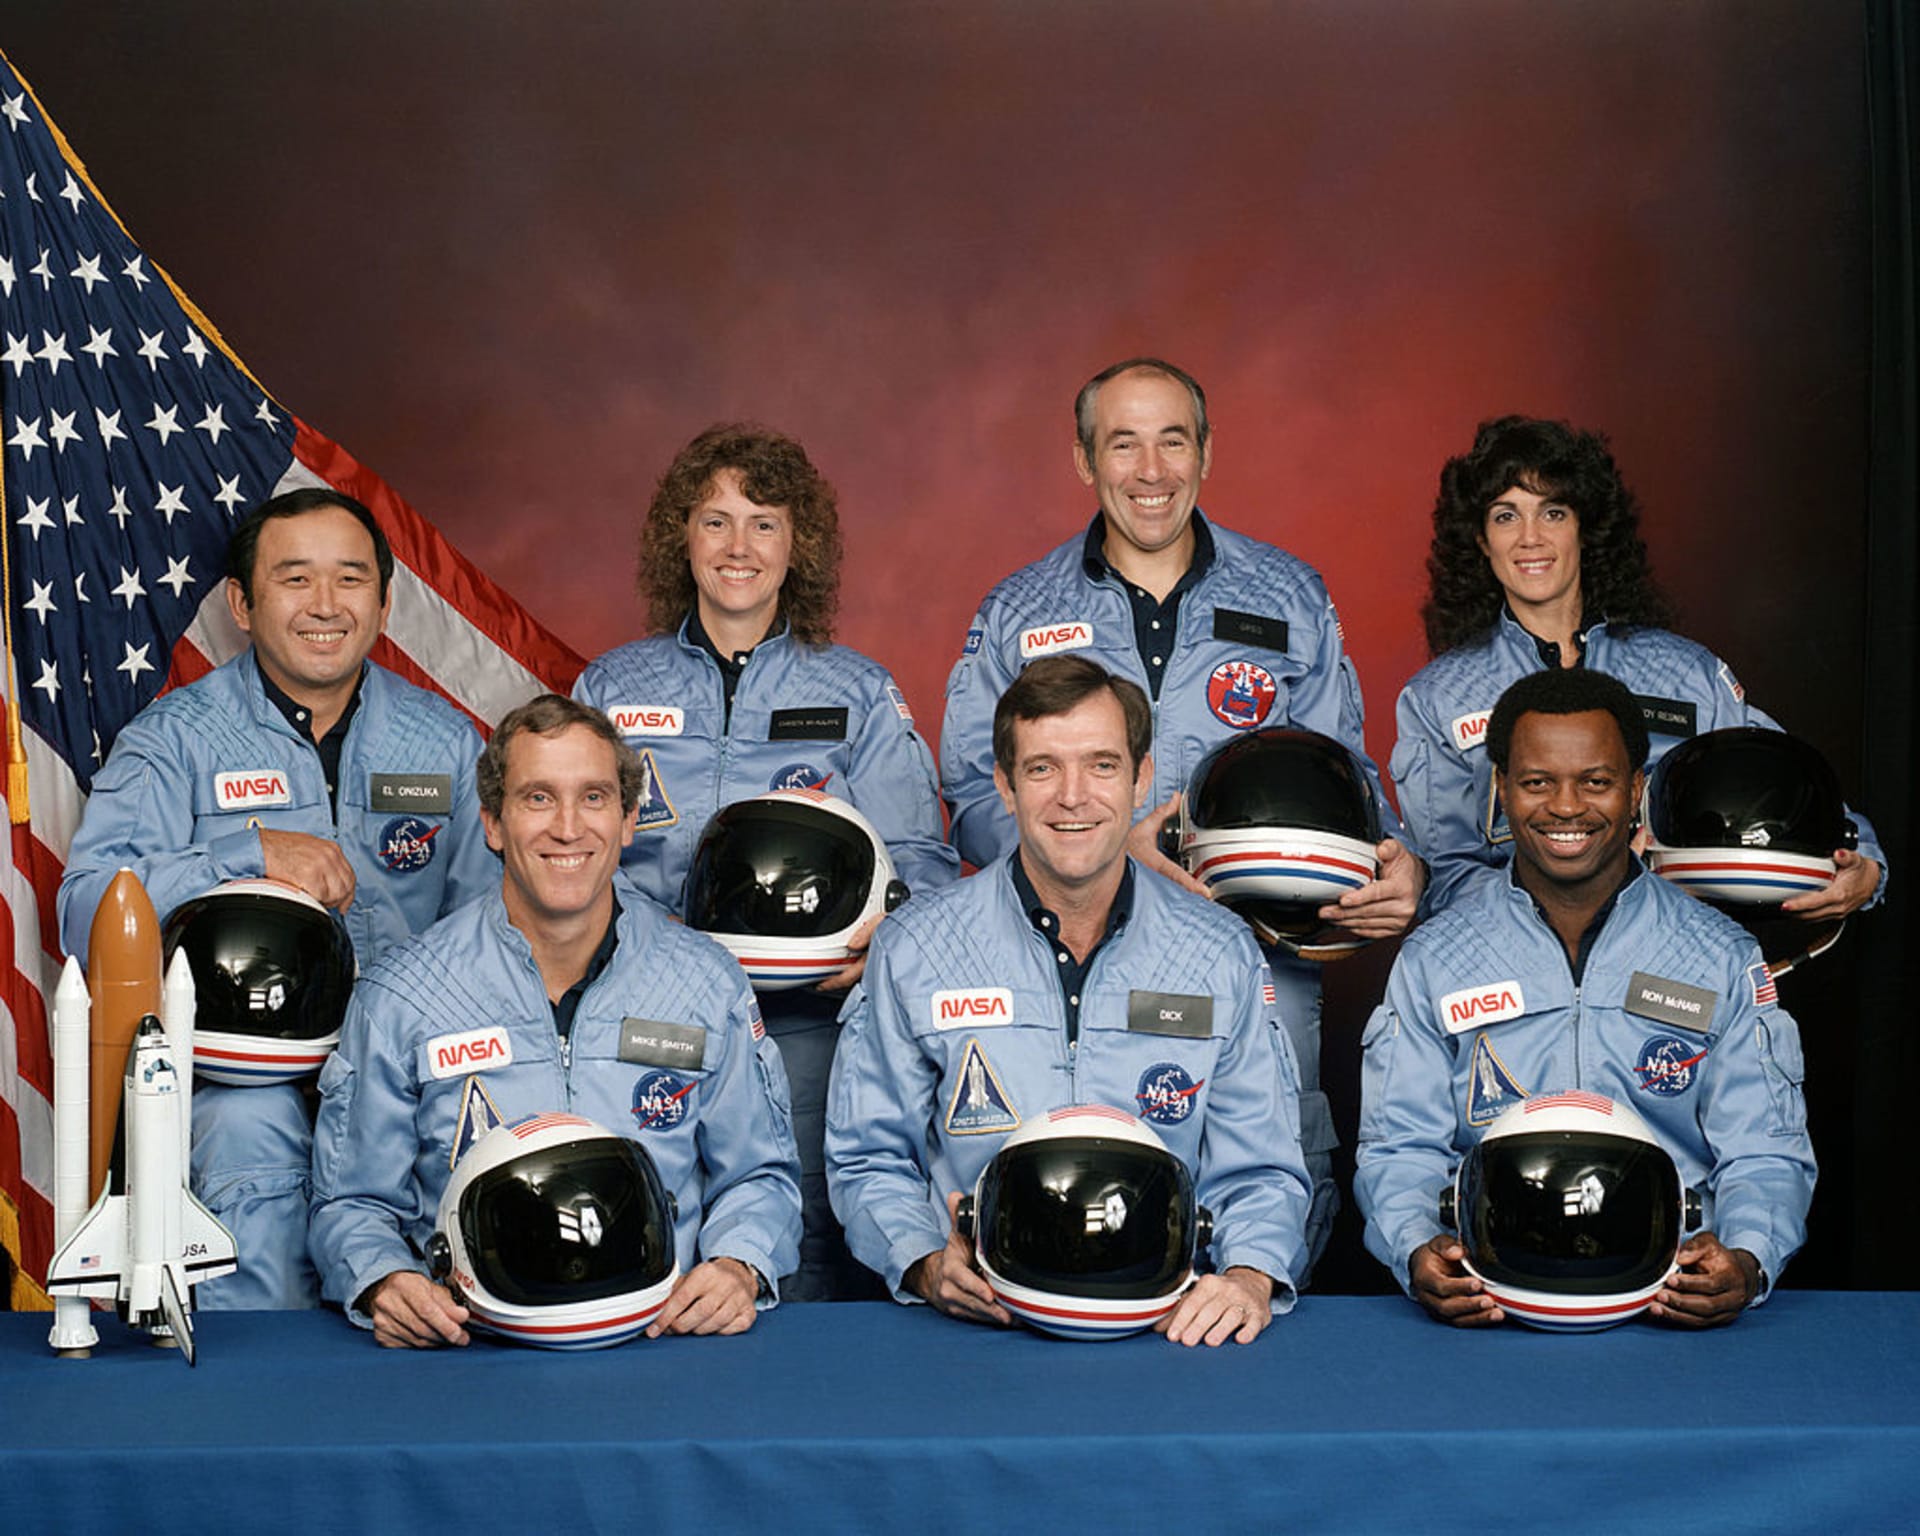 Posádka raketoplánu Challenger... která celá při letu zahynula